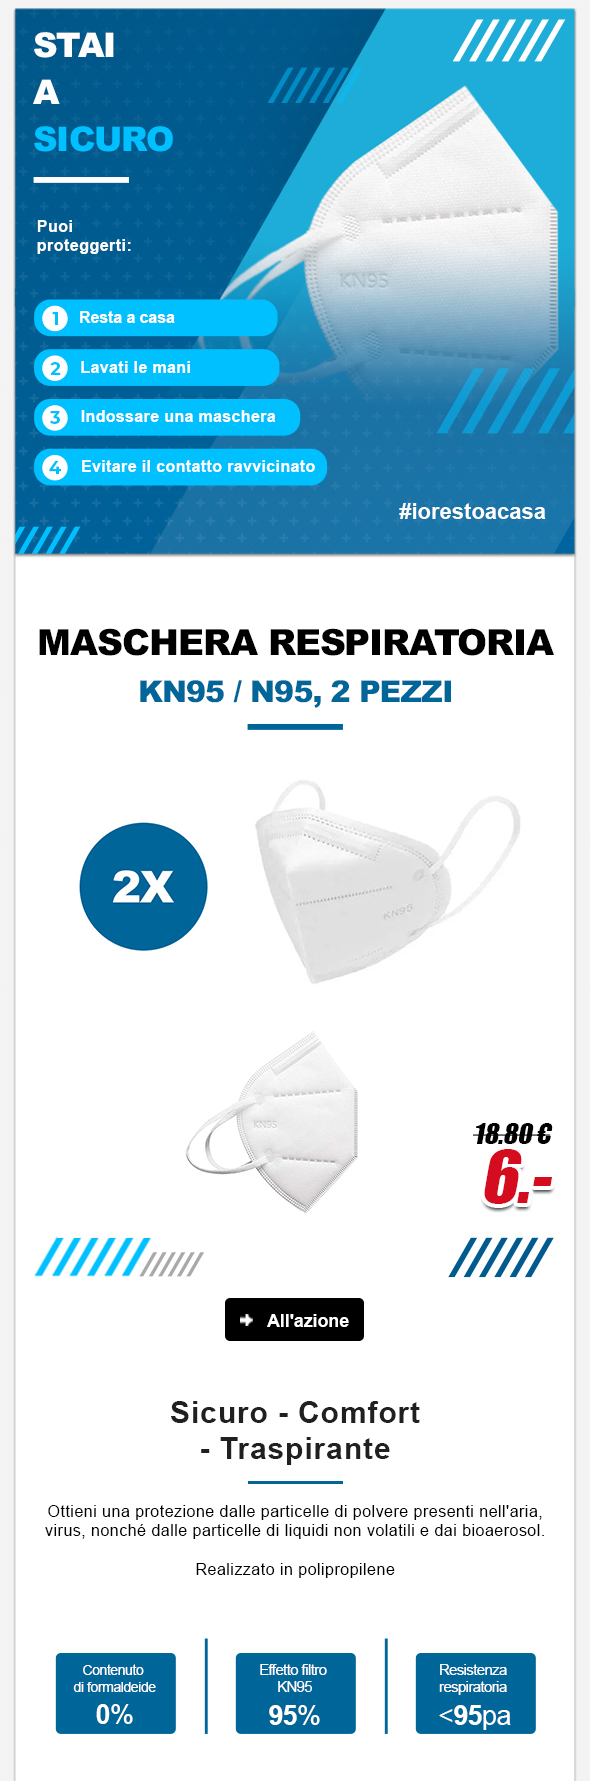 Maschera respiratoria KN95 / N95, 2 pezzi